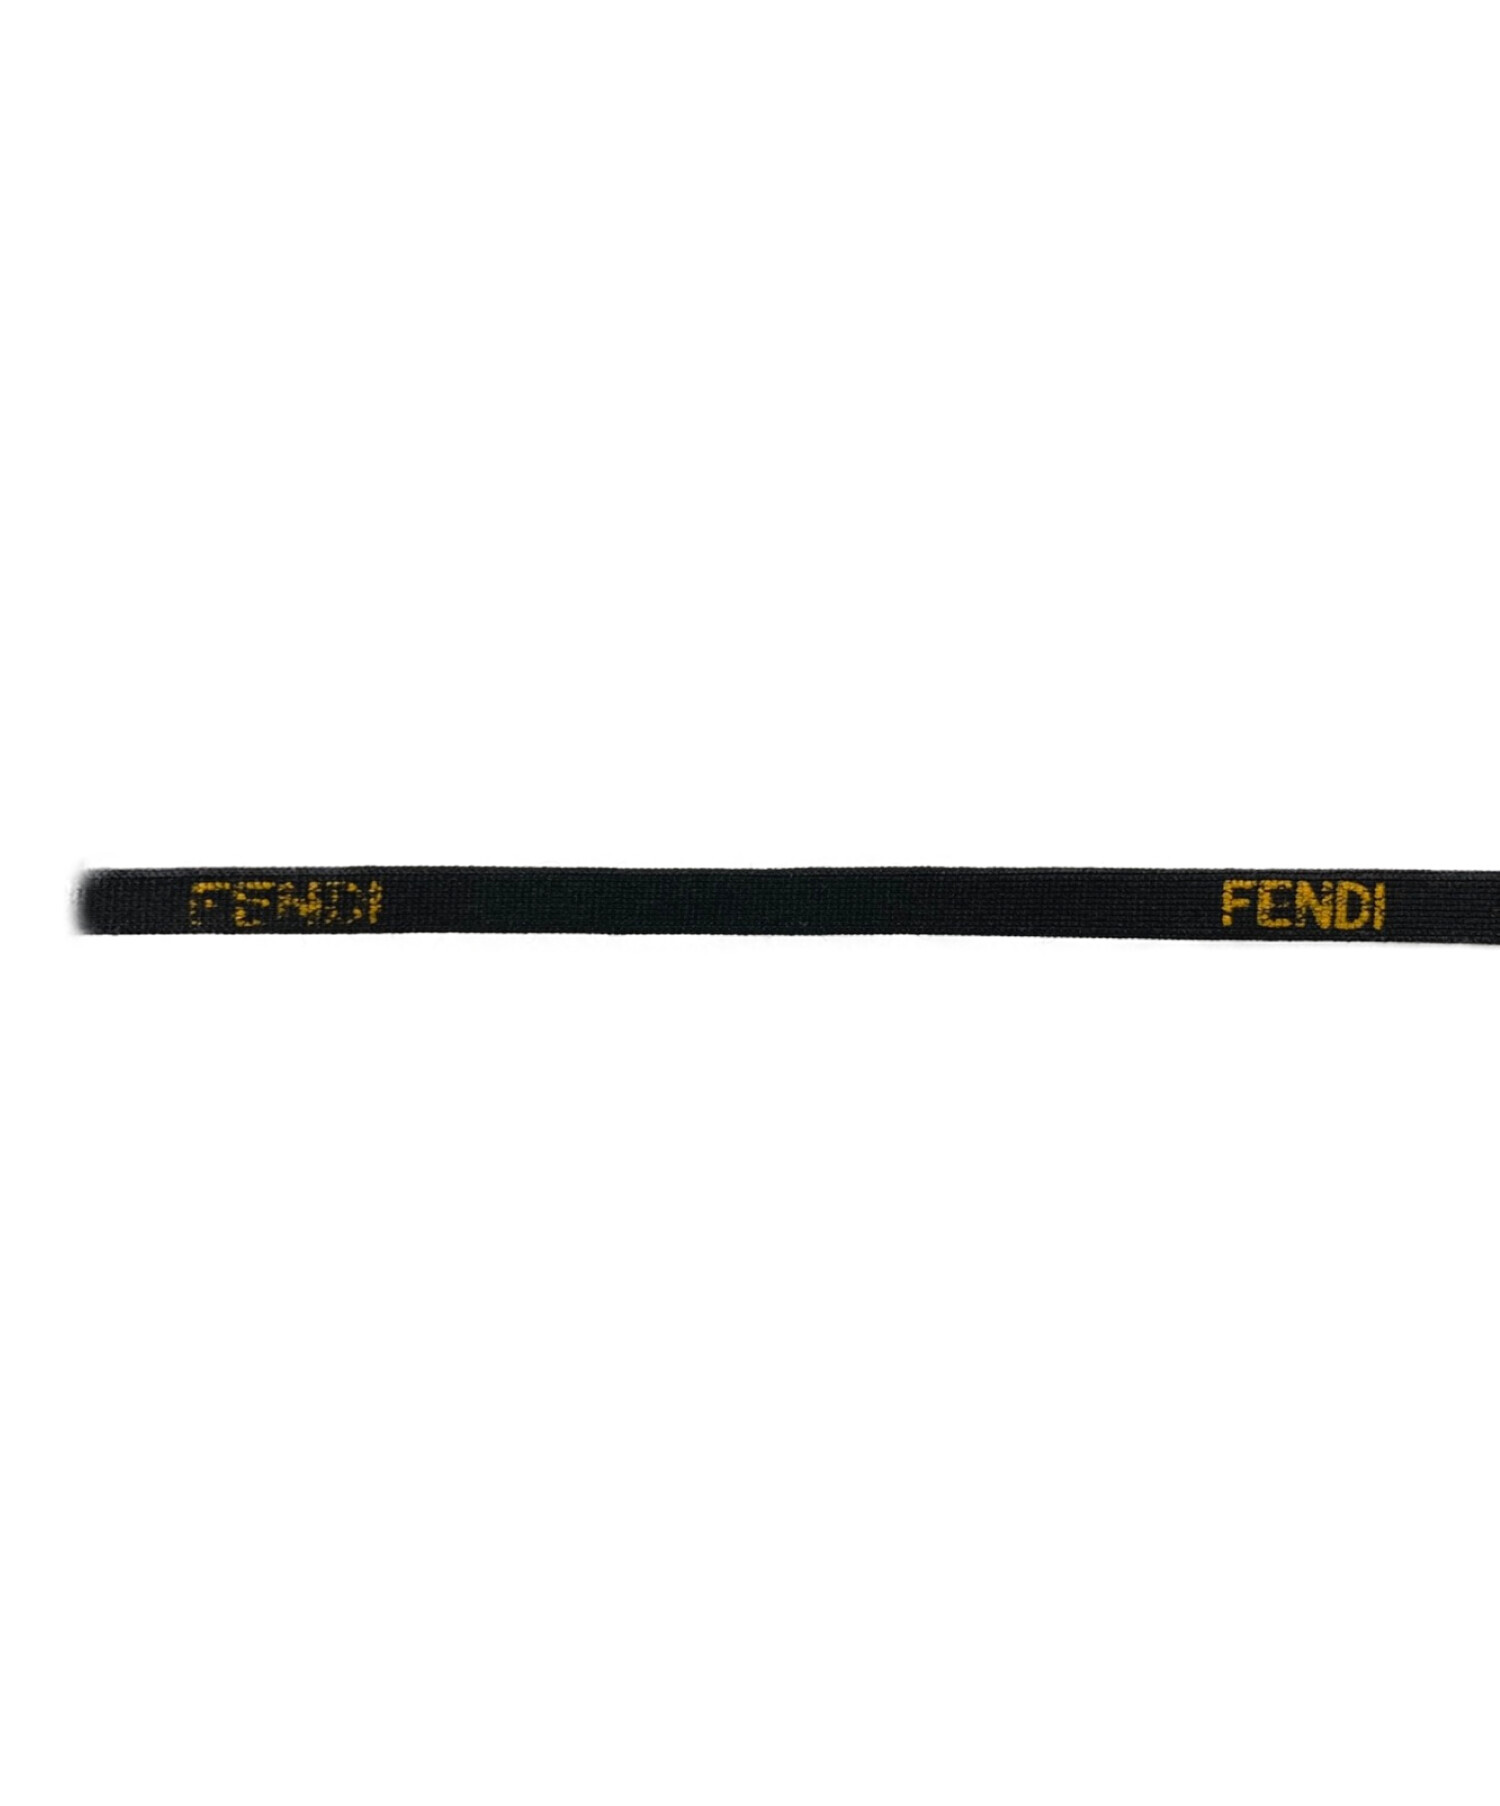 FENDI (フェンディ) スウェットパンツ ブラック サイズ:52